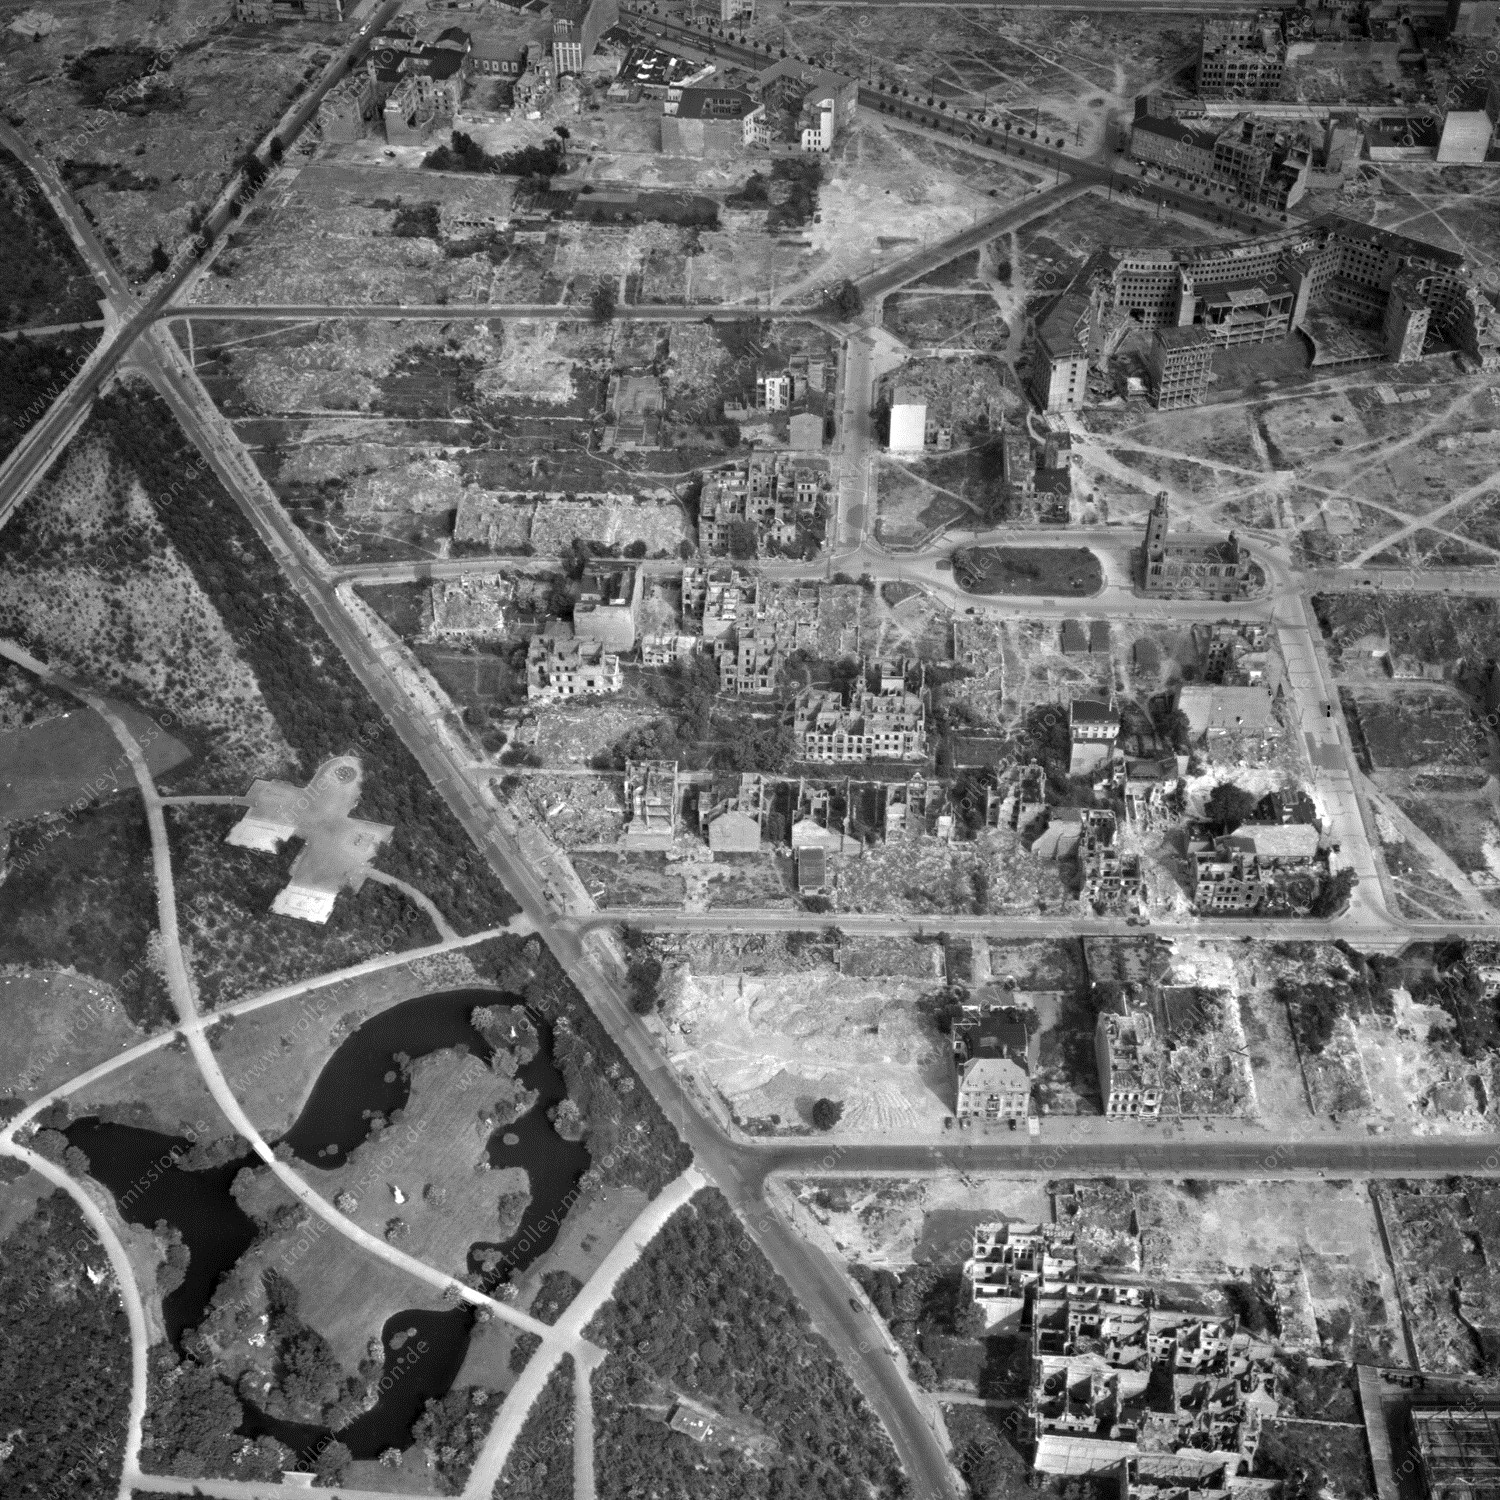 Alte Fotos und Luftbilder von Berlin - Luftbildaufnahme Nr. 03 - Historische Luftaufnahmen von West-Berlin aus dem Jahr 1954 - Flugstrecke Xray